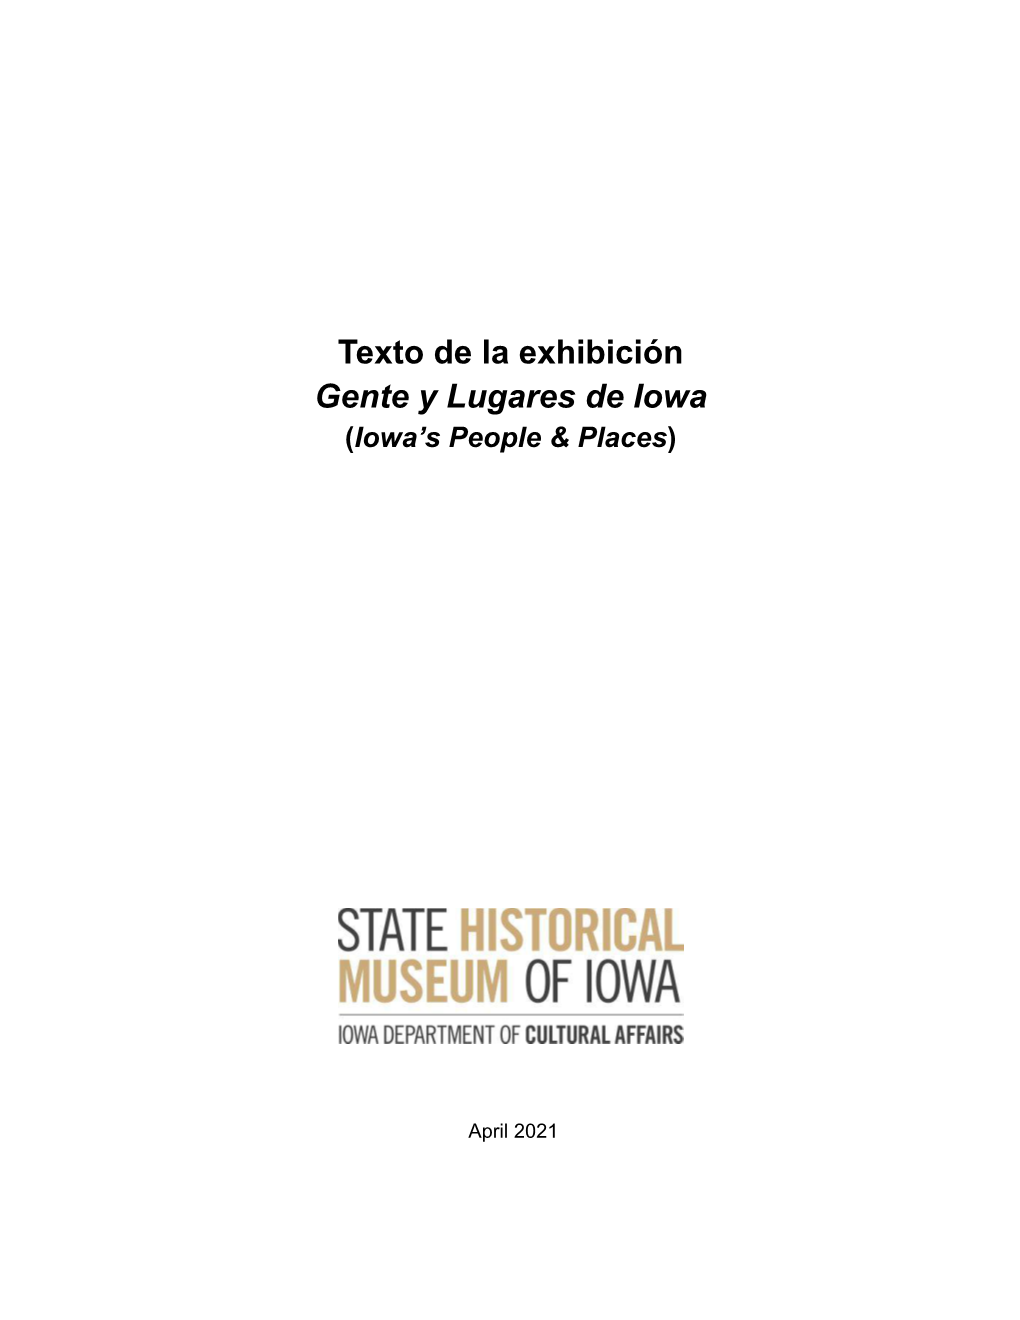 Texto De La Exhibición Gente Y Lugares De Iowa with Graphics APR2021